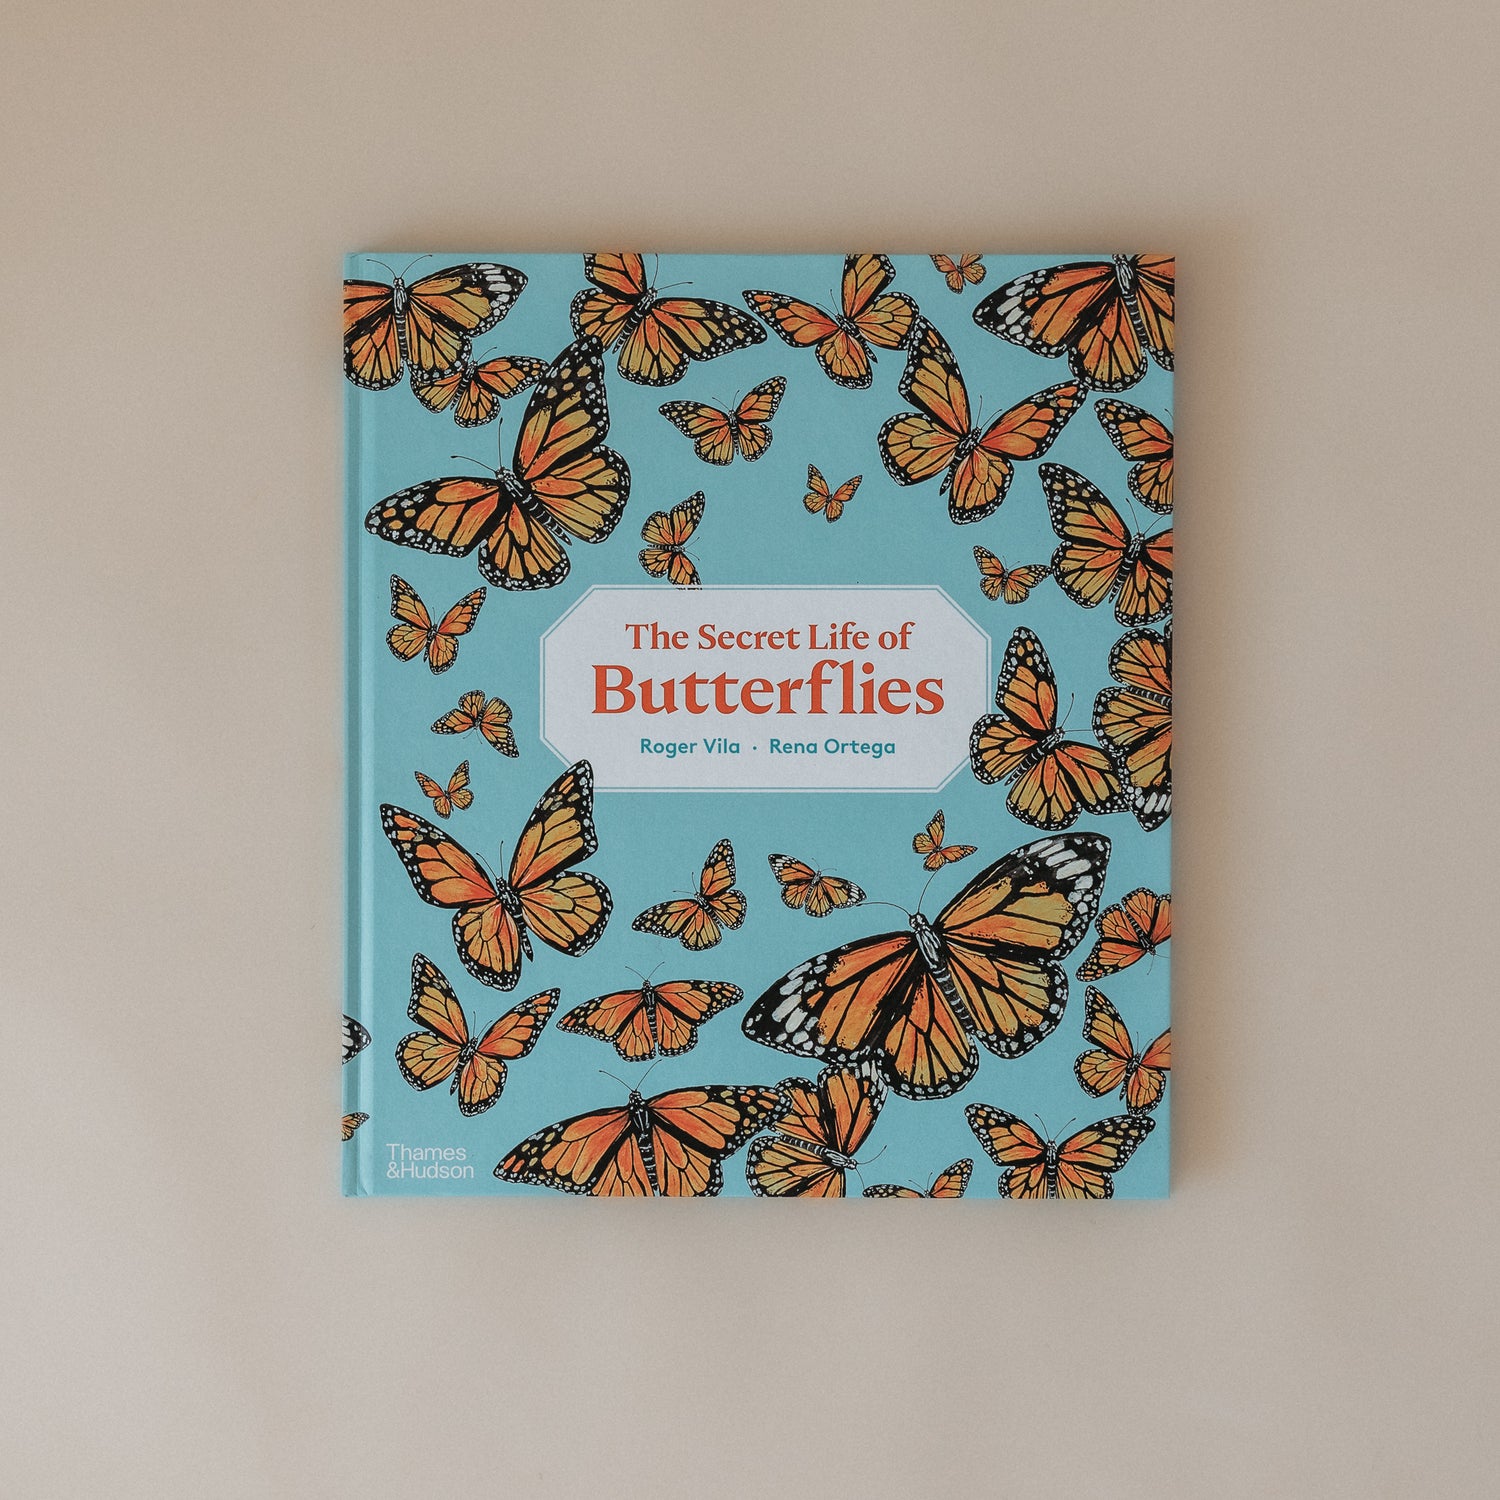 The Secret Life of Butterflies